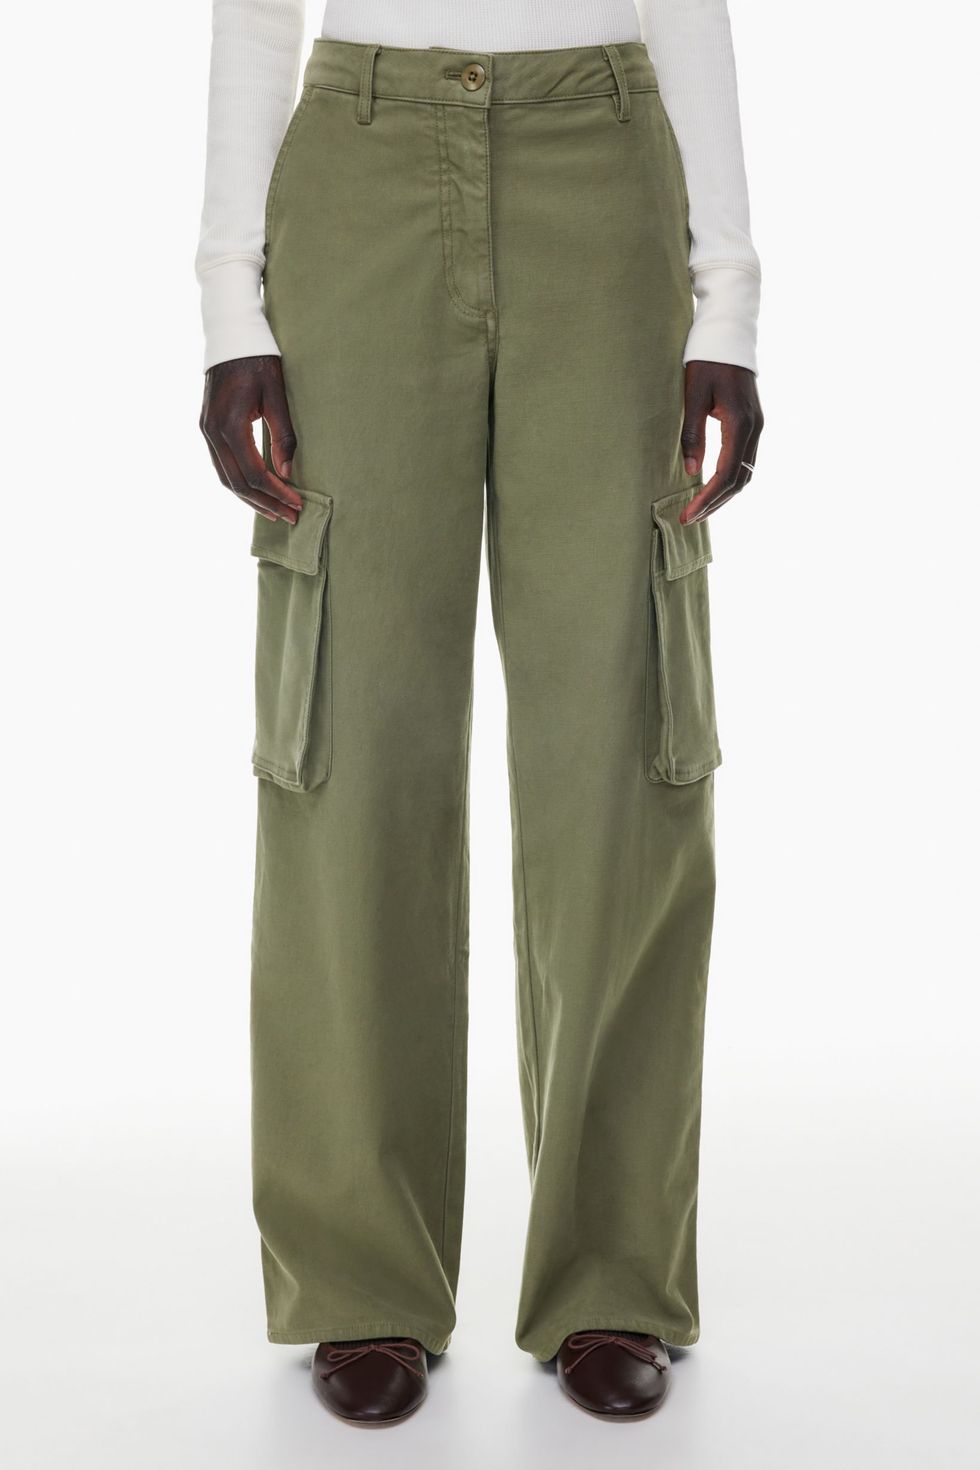 KONDALA Streetwear Armygreen Cargo Pants Women High Waist Side Pockets Wide  Leg Trousers Fashion 2023 Summer